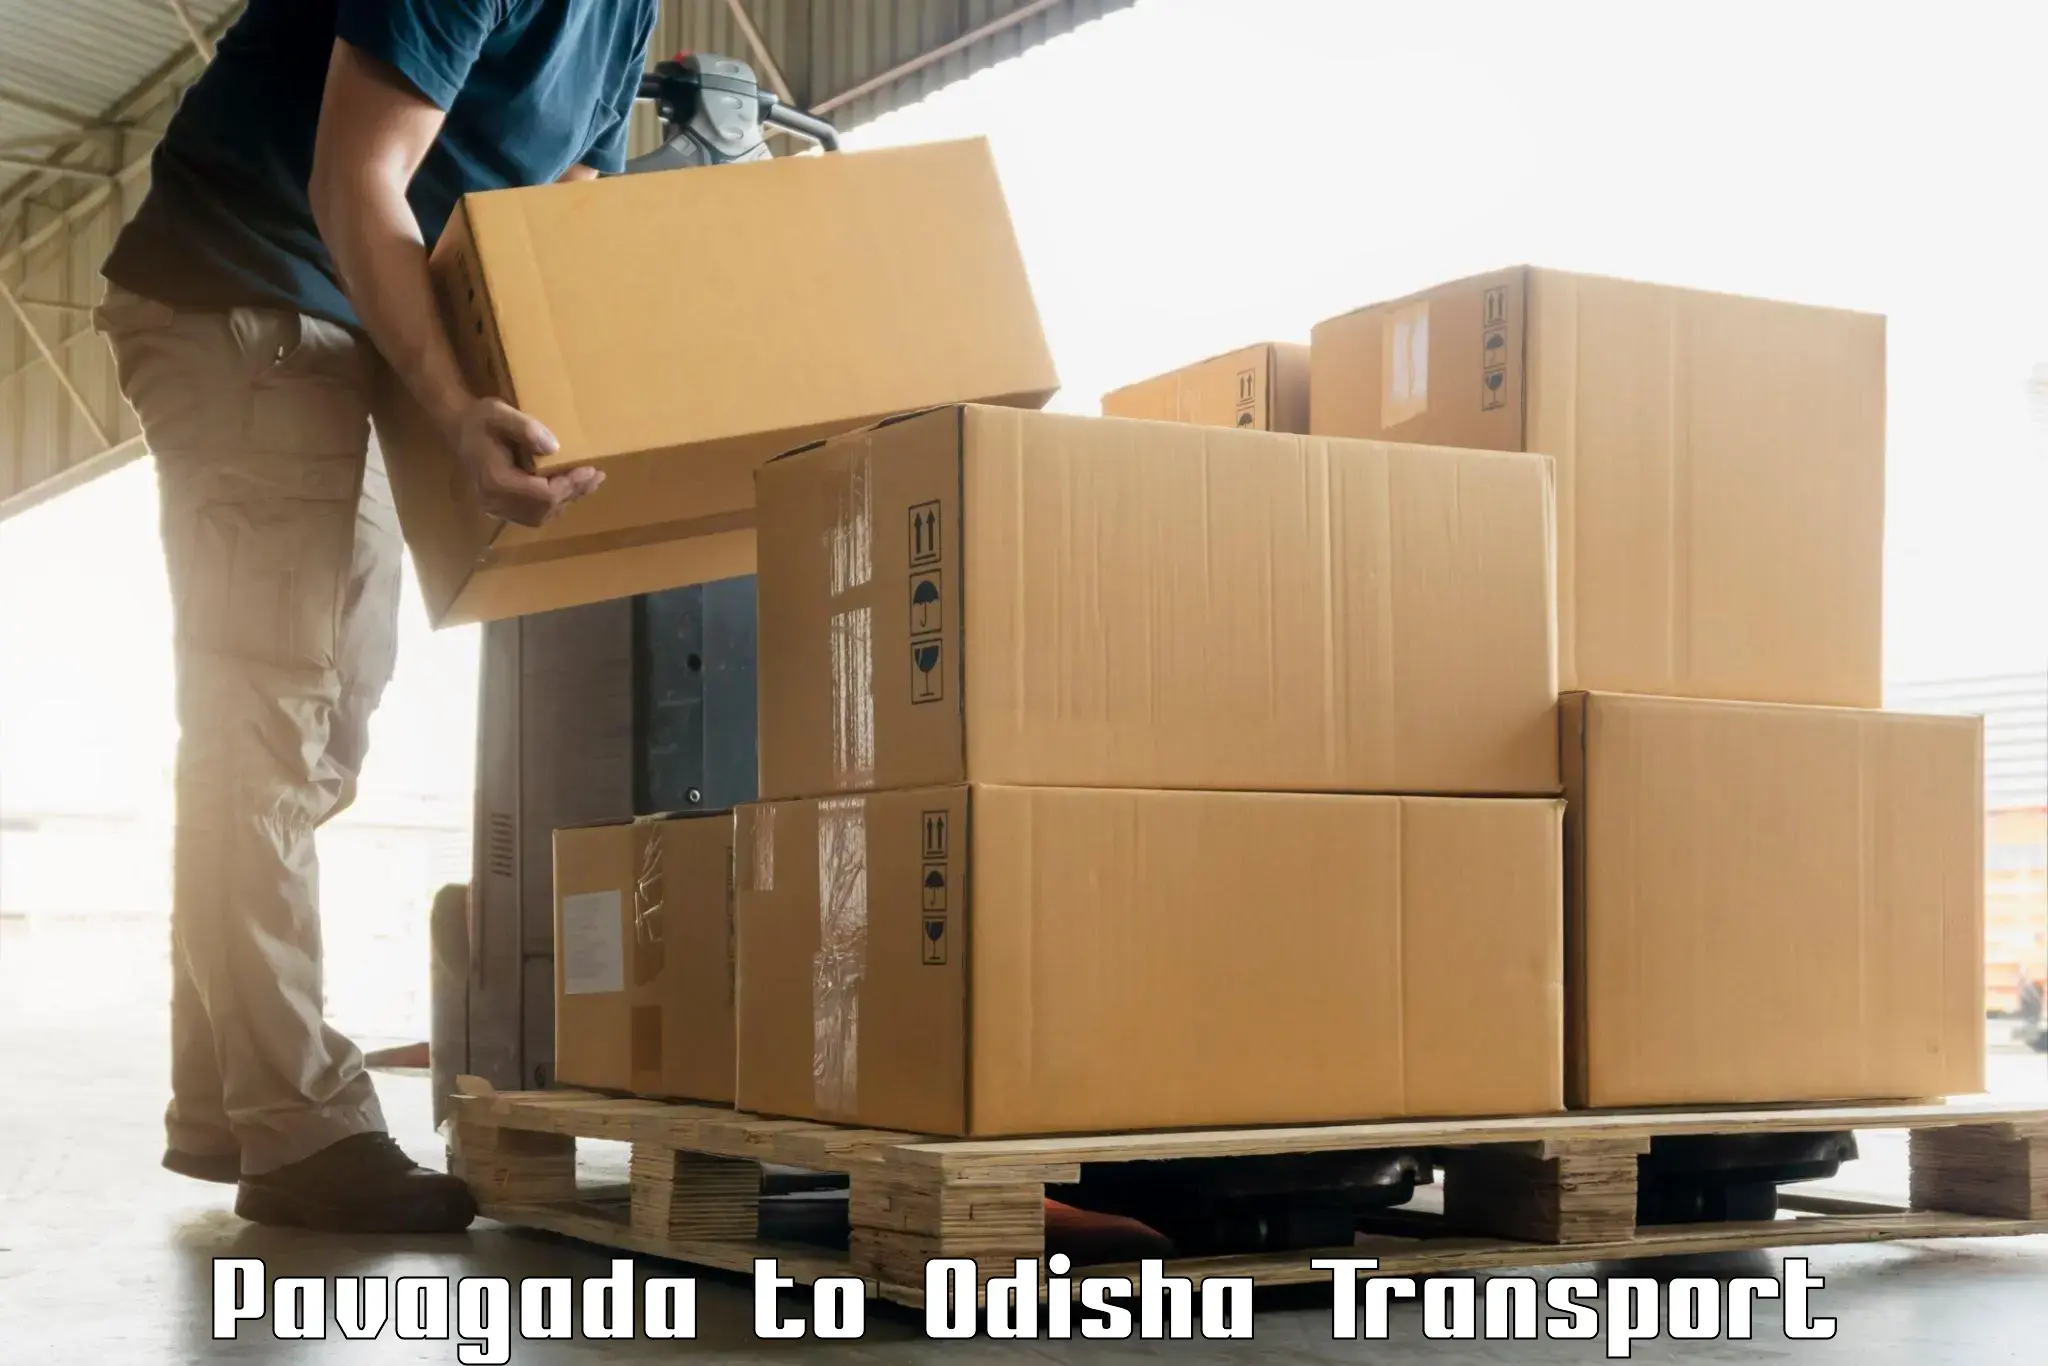 Online transport booking Pavagada to Chandinchowk